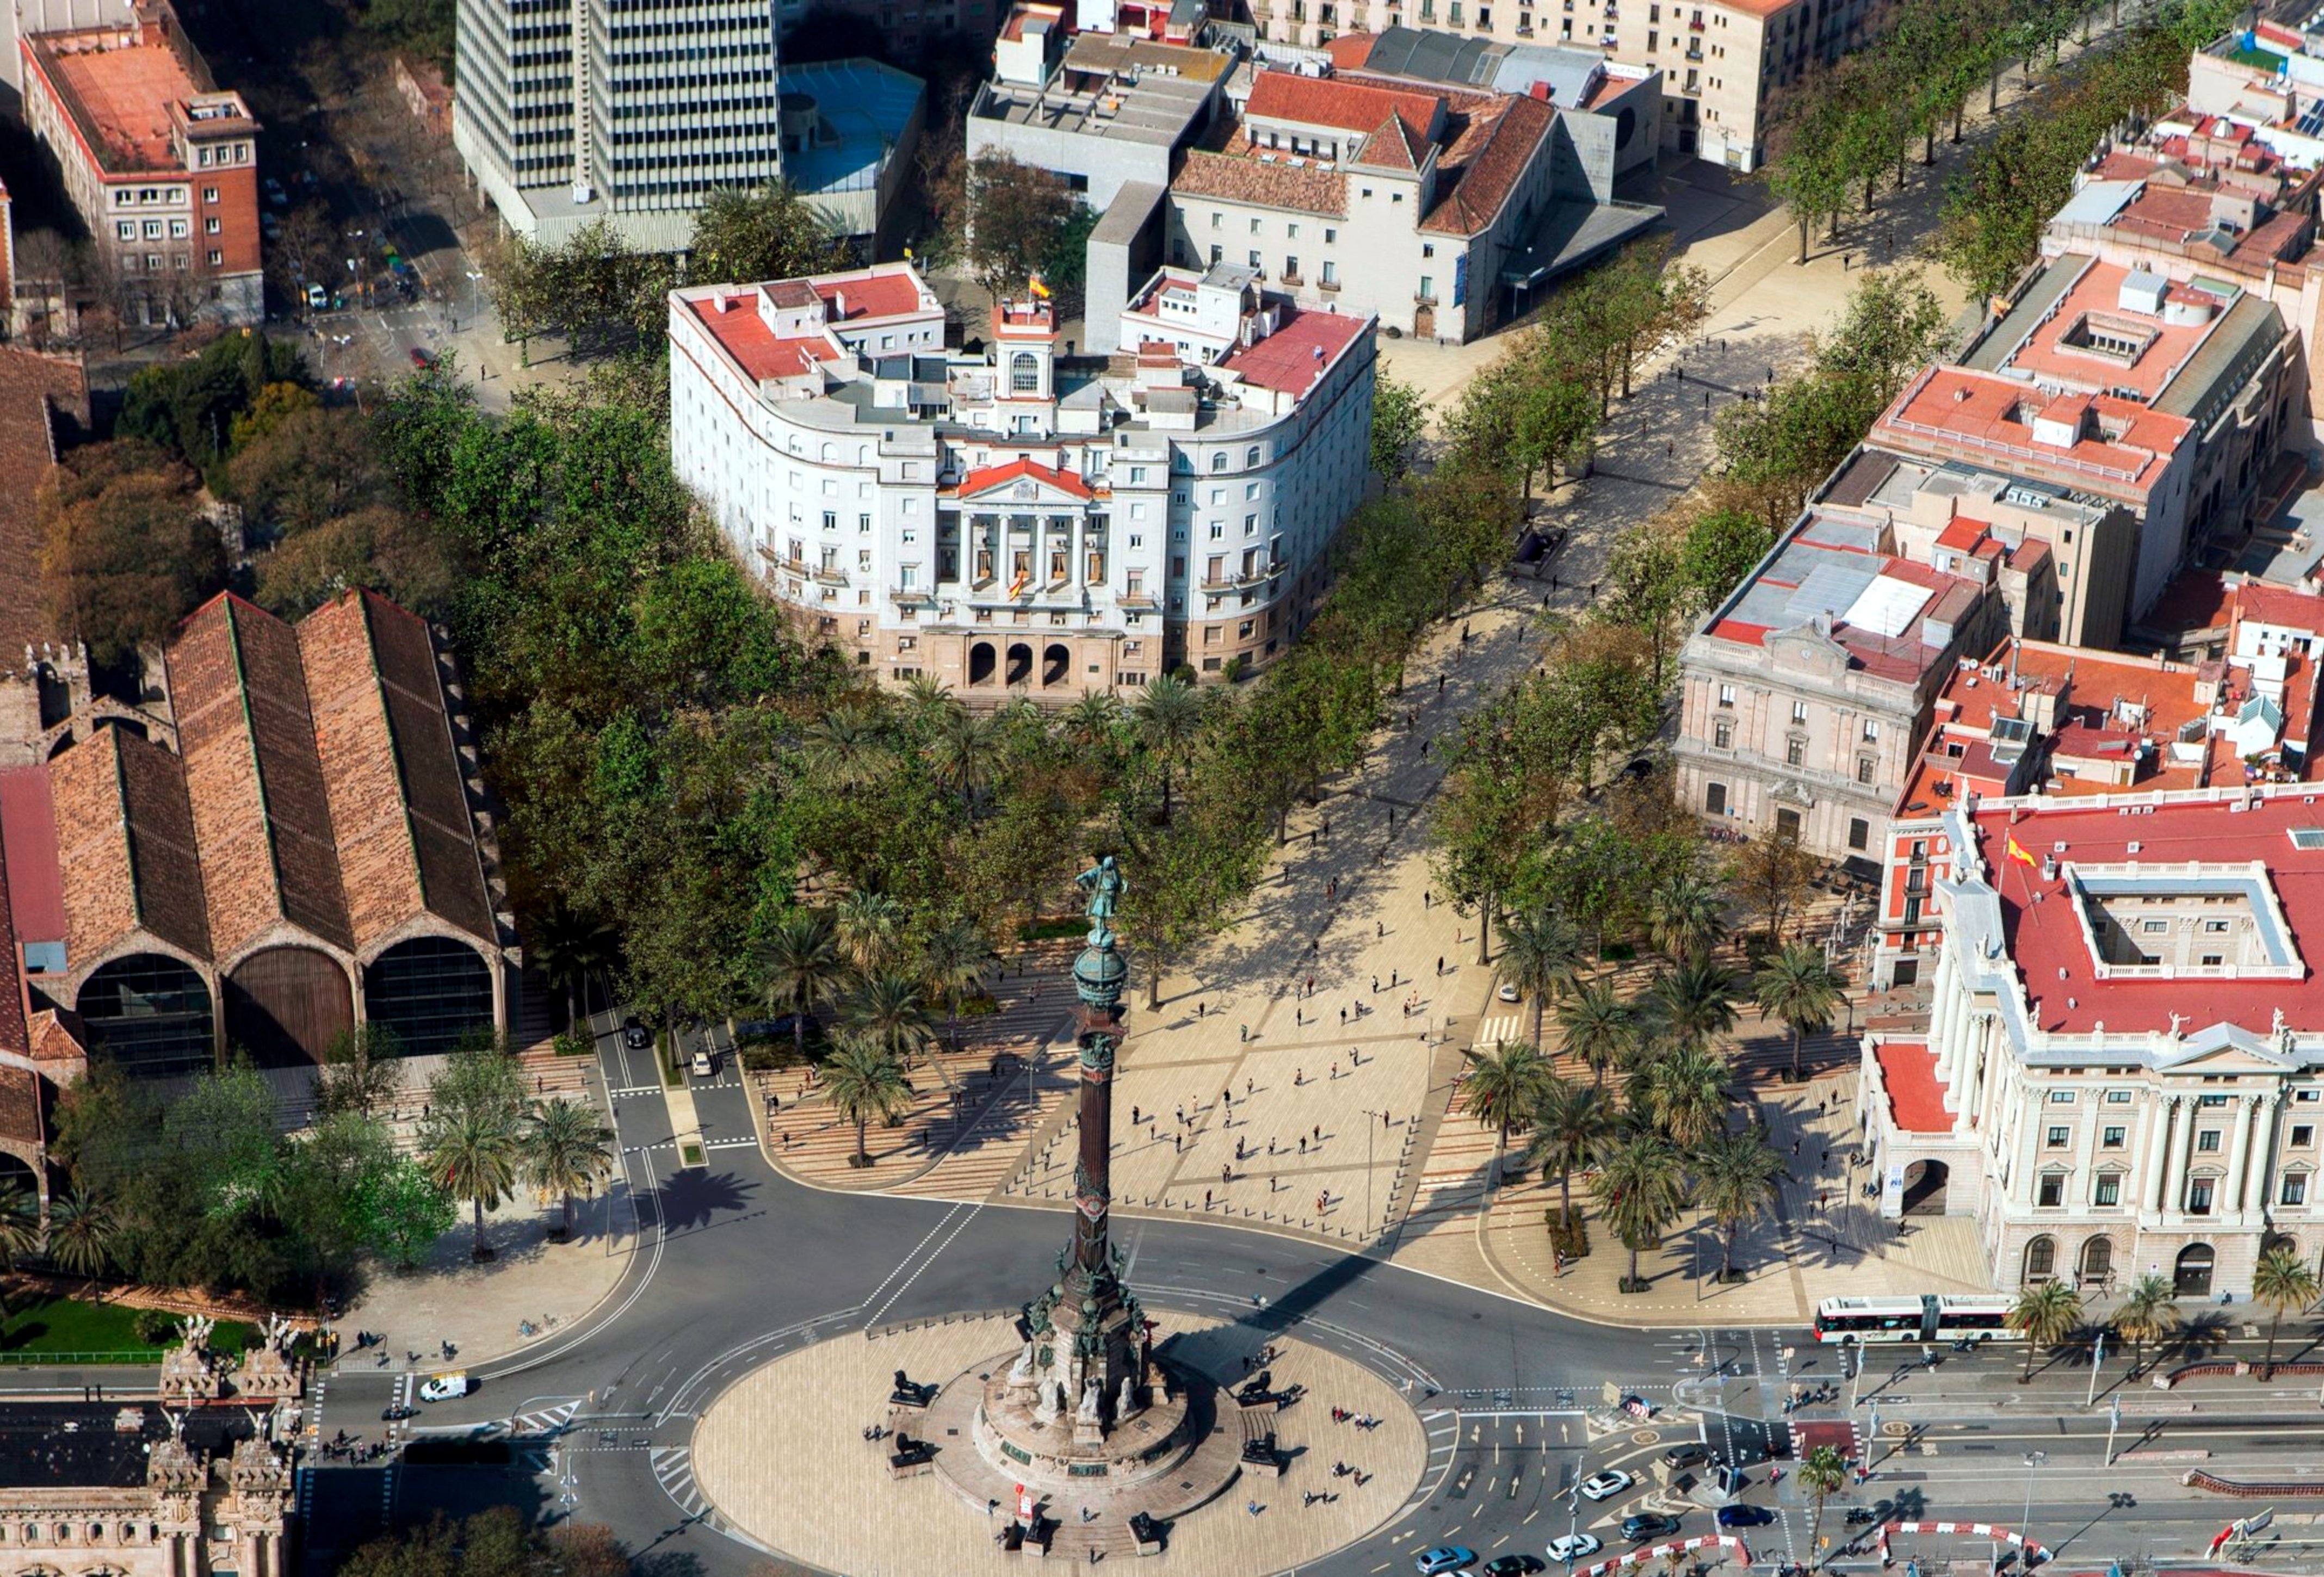 La reforma de la Rambla de Barcelona començarà el 3 d'octubre al tram Colom-Santa Madrona